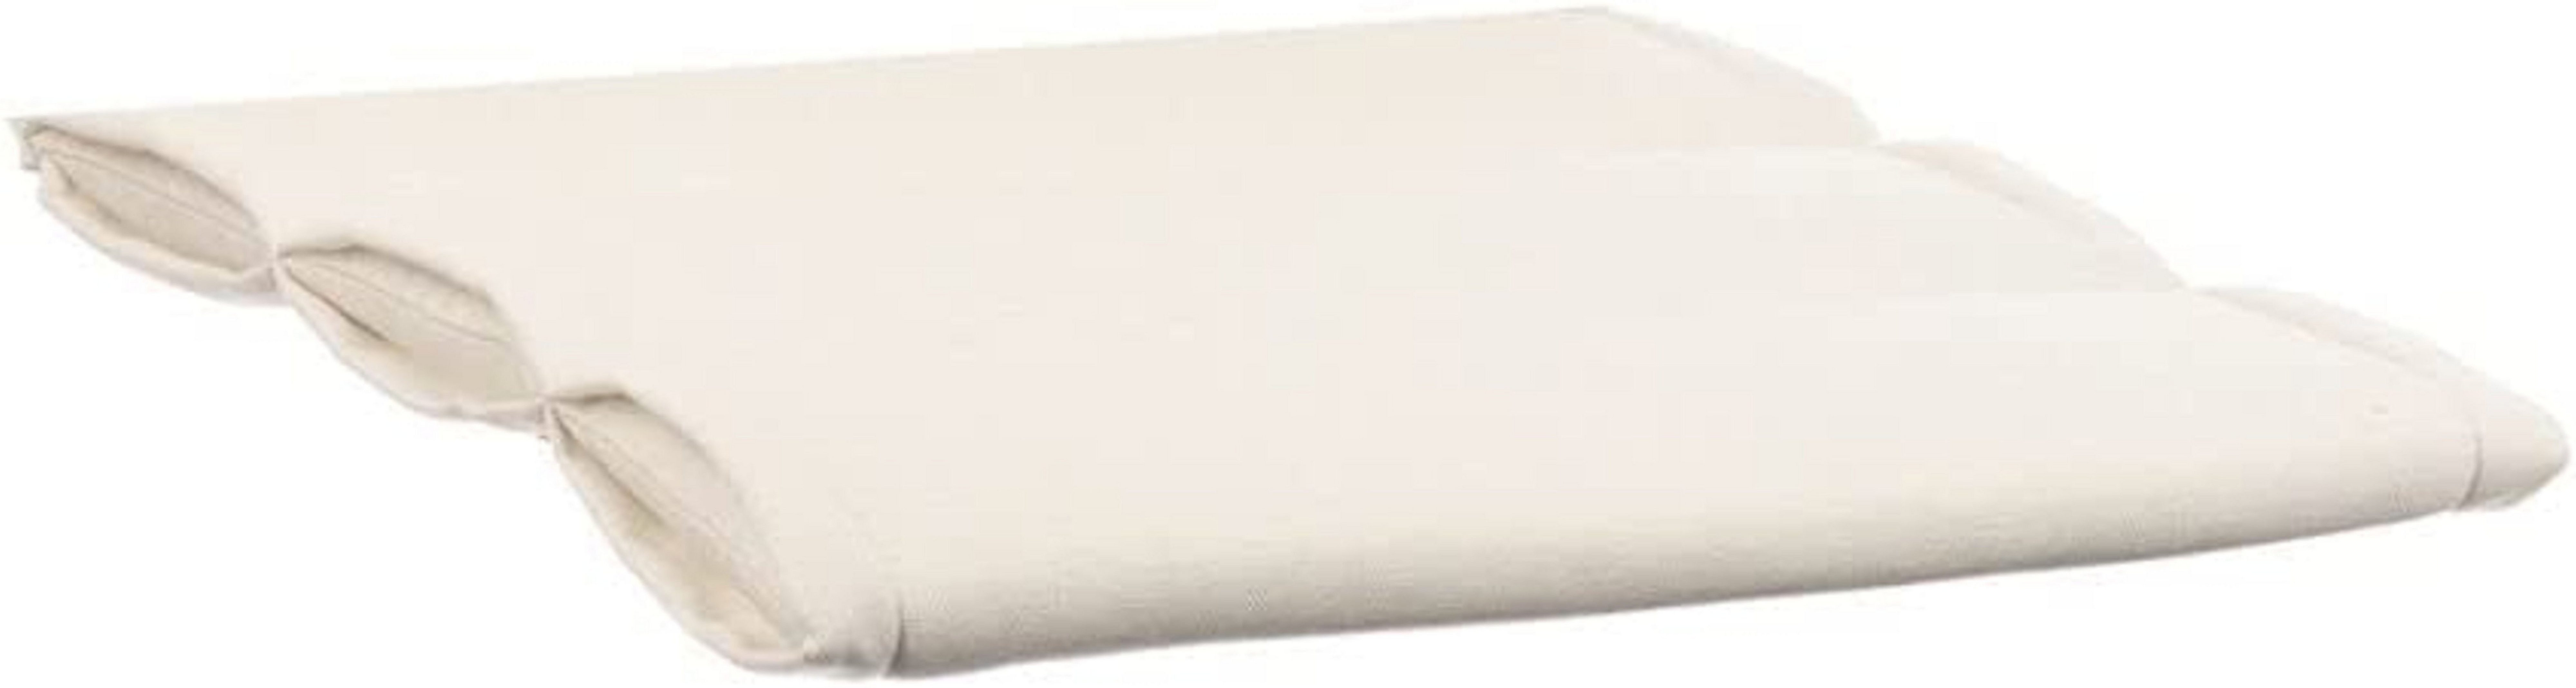 KETTtex EXKLUSIV Polsterauflage KTH 1 - creme - Polsterauflagen für Gartenstühle, mehrfach quergesteppt, Überschlag mit Klettband